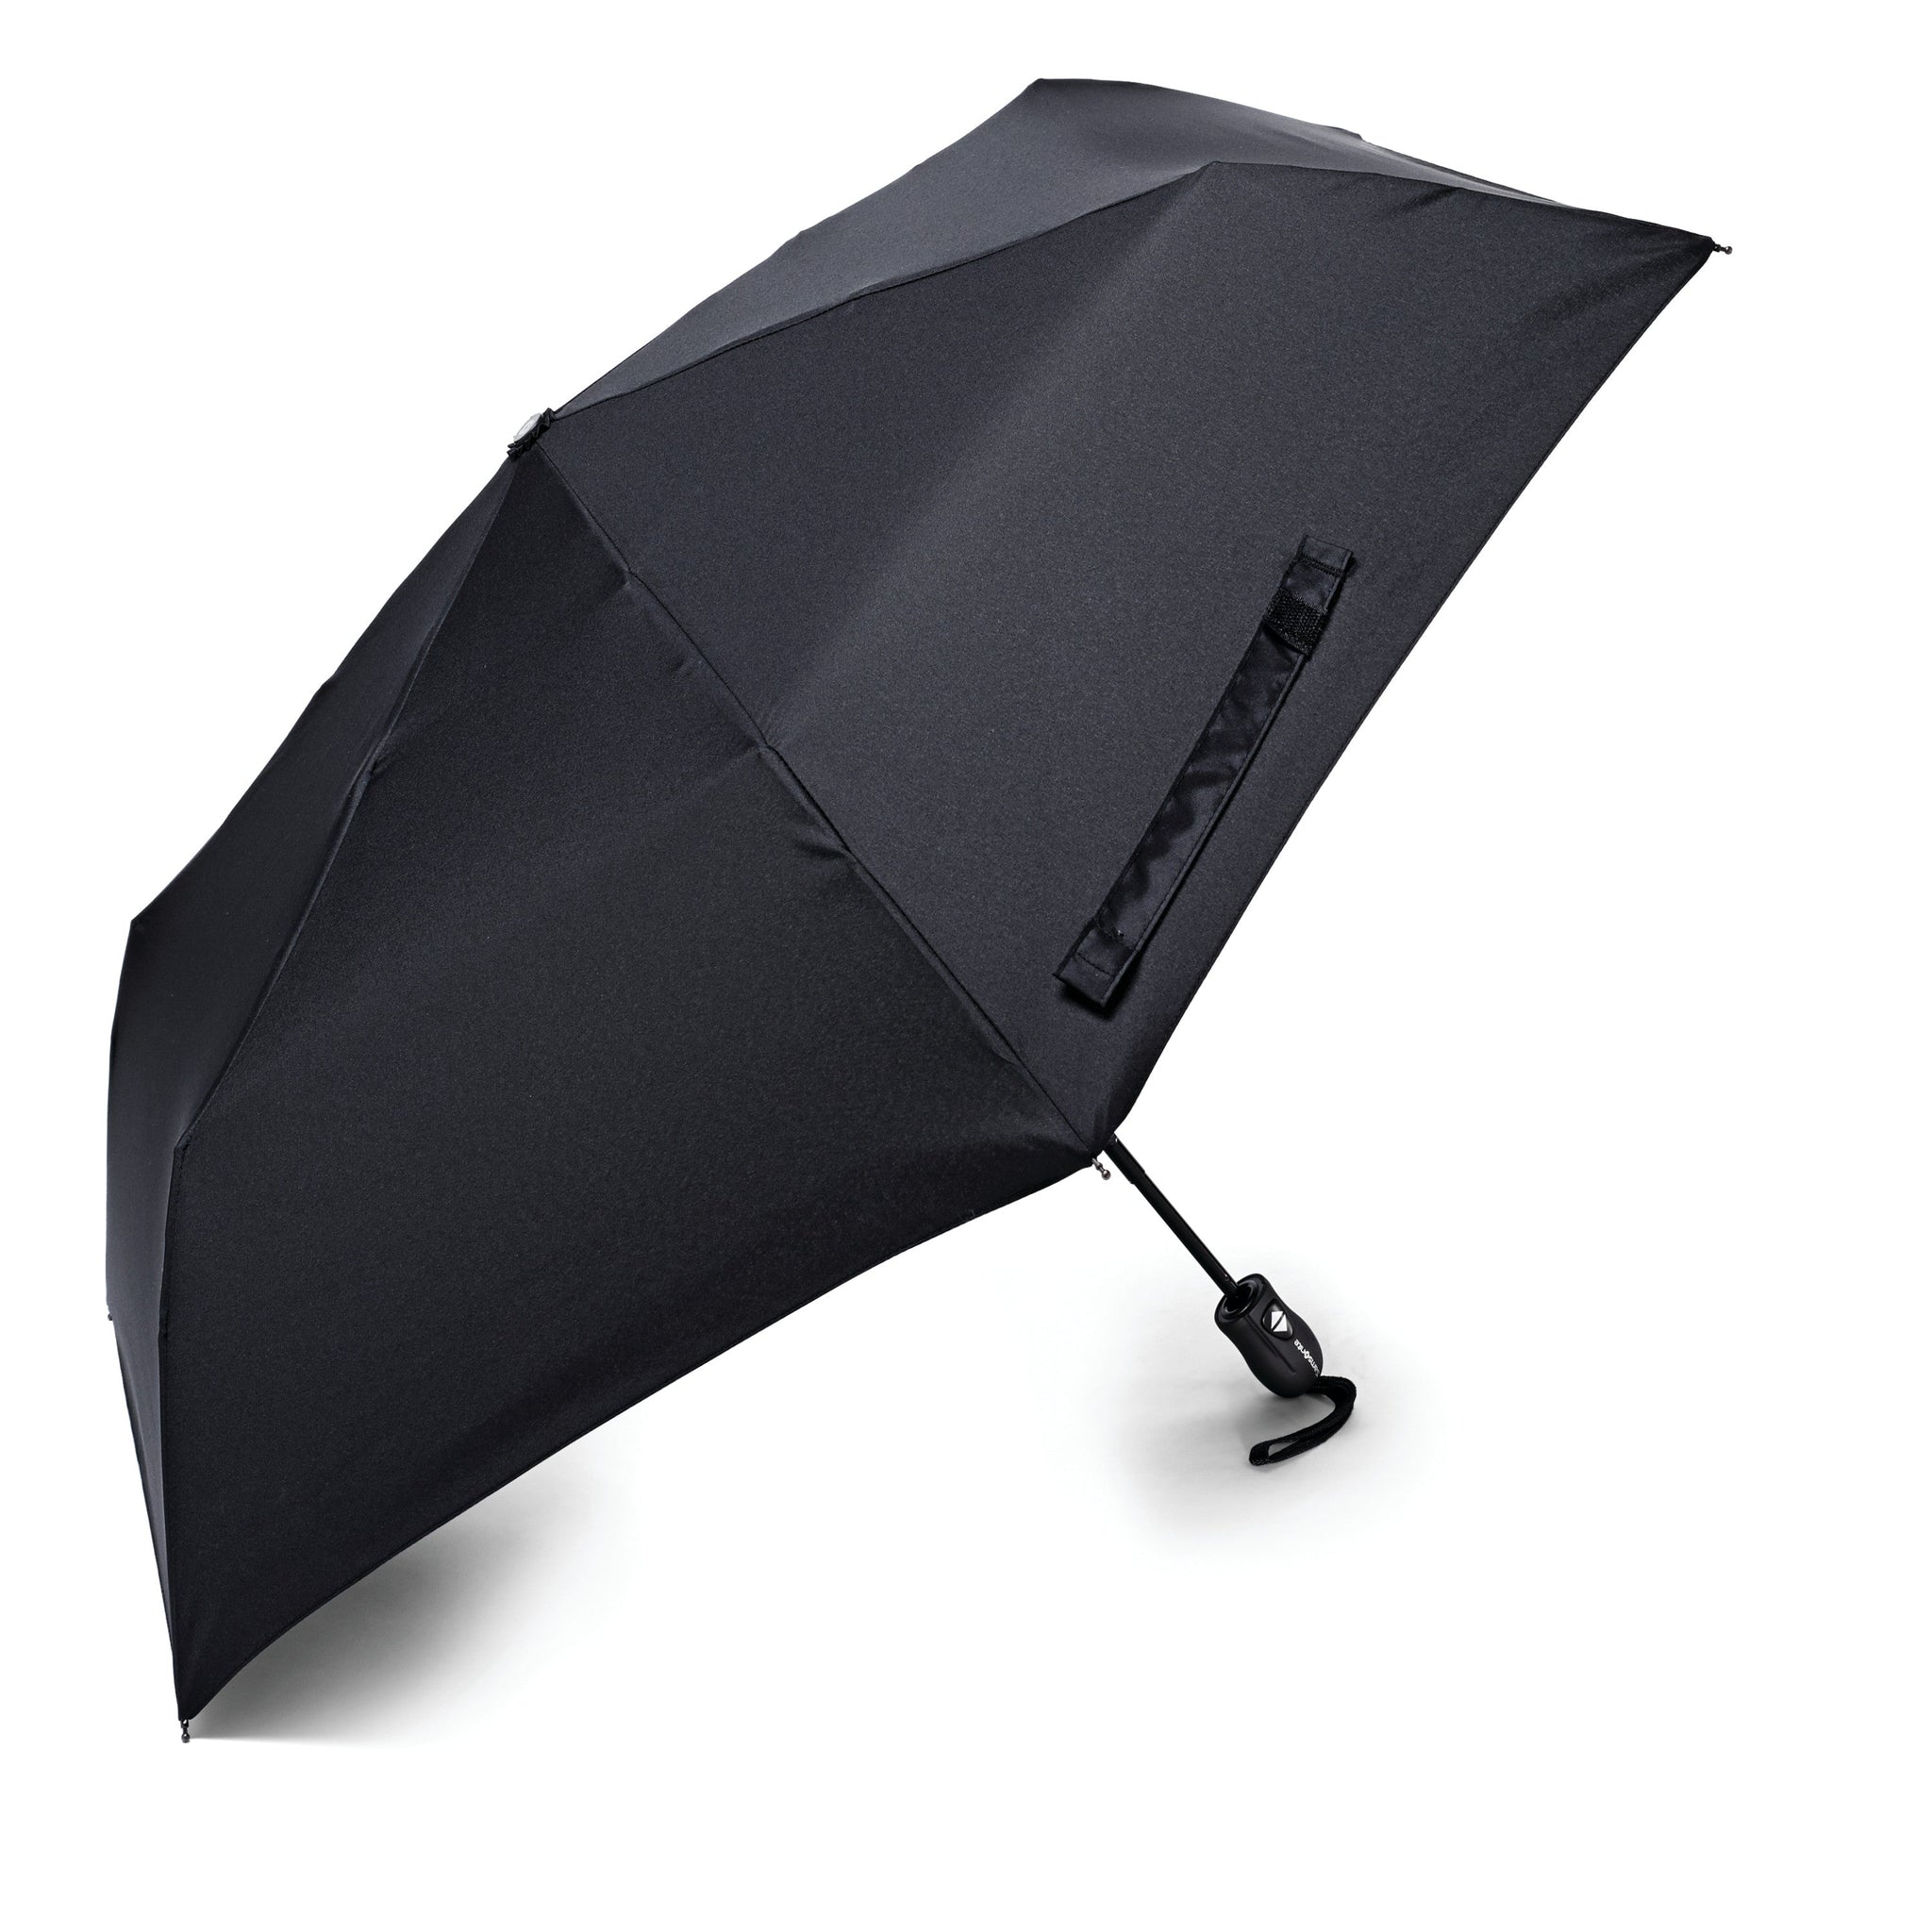 Samsonite Compact Auto OpenClose Umbrella – Luggage Pros